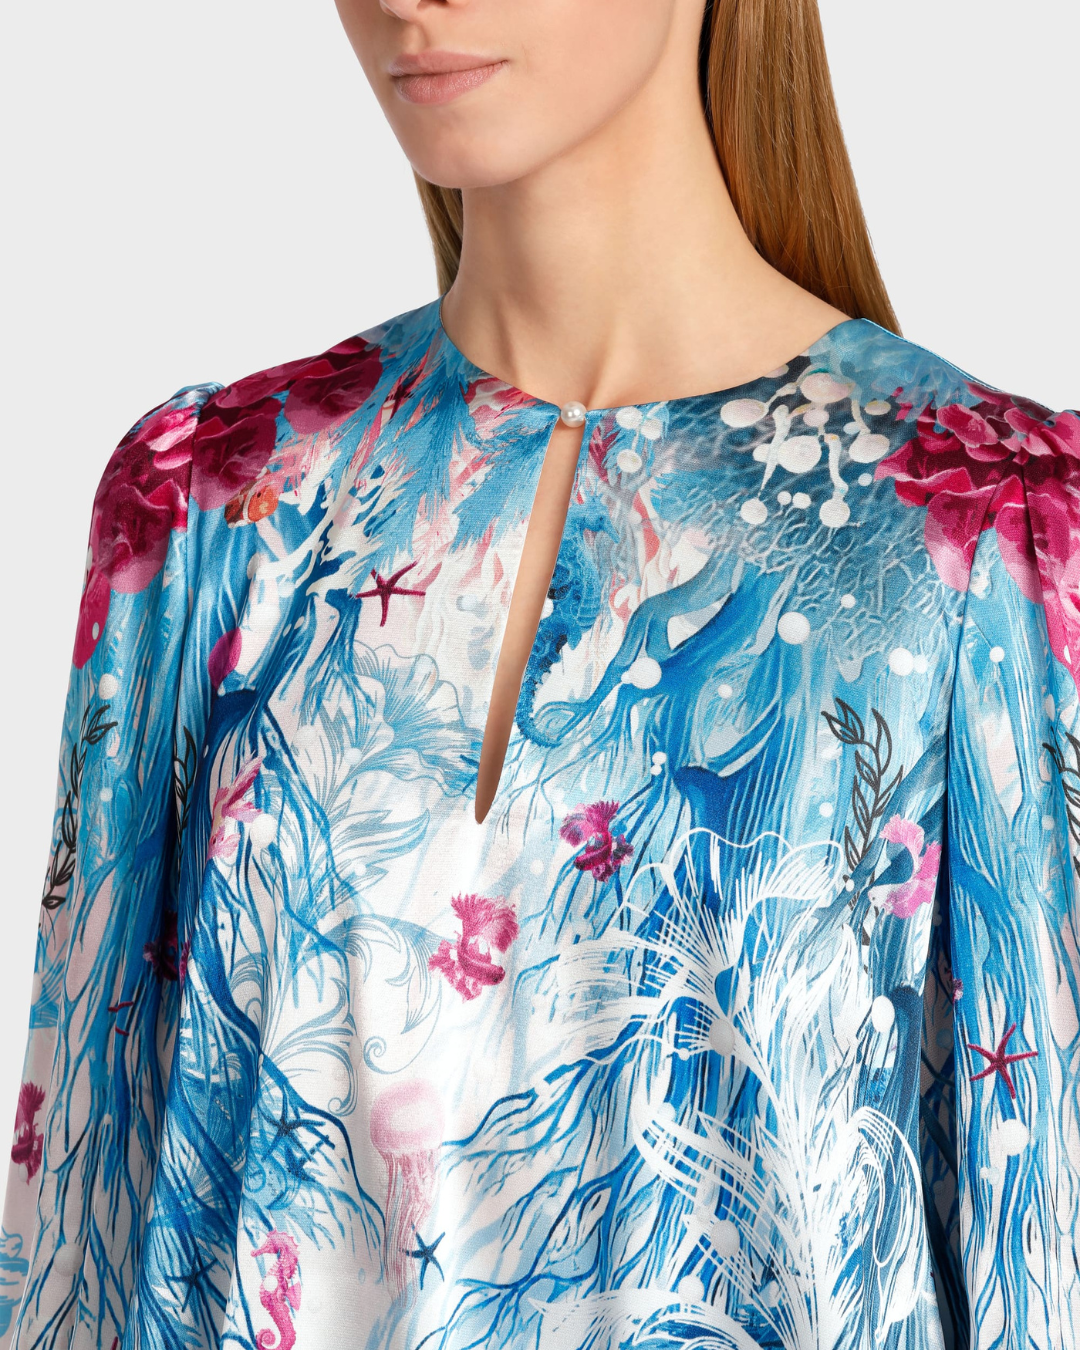 Slip-on underwater design blouse